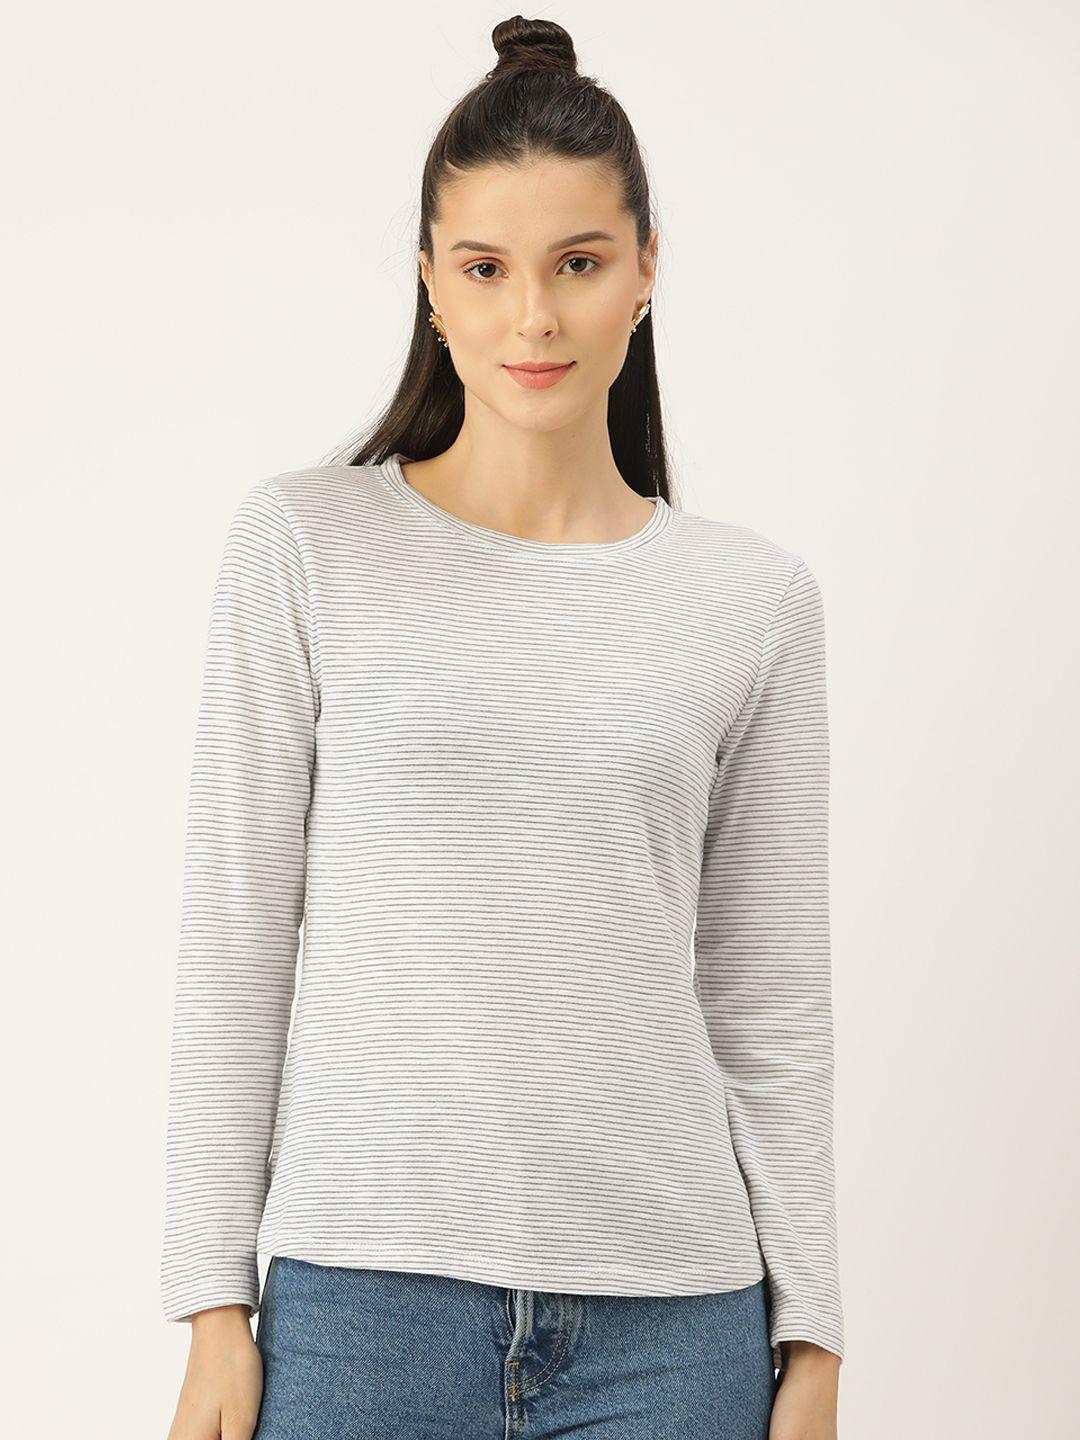 pirko women grey striped cotton t-shirt